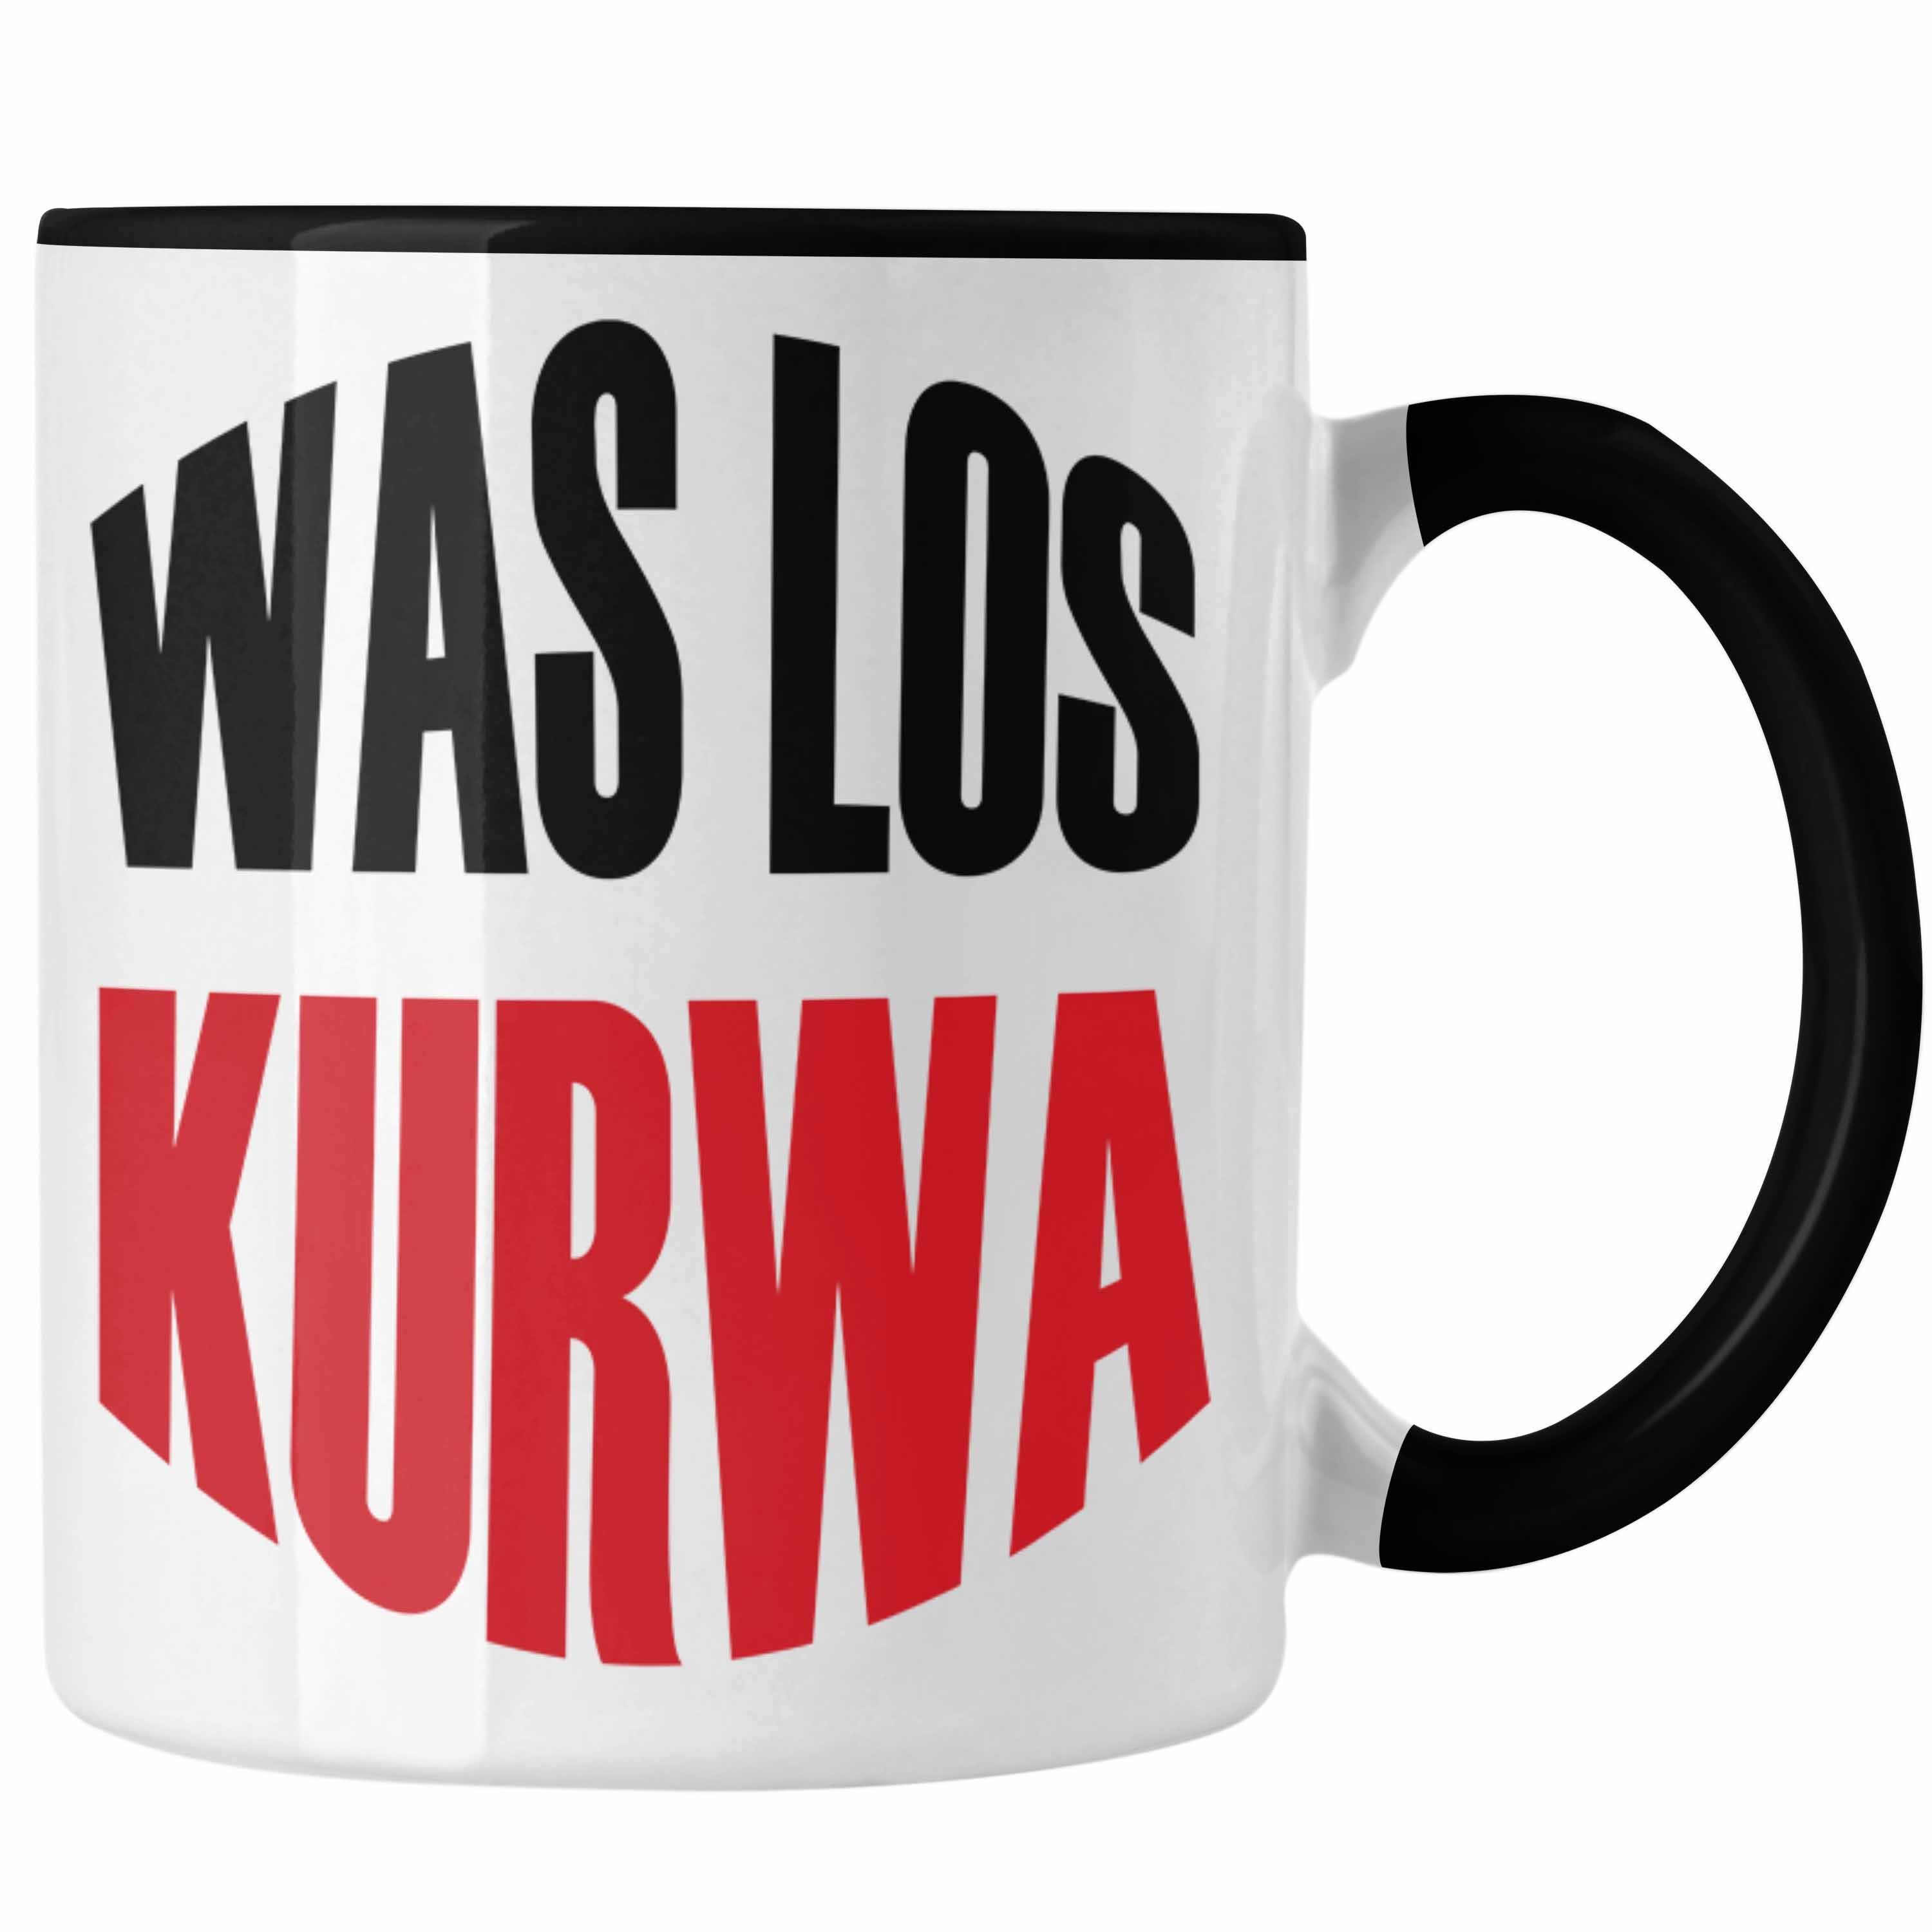 Polen Trendation Schwarz Tasse Lustige Tasse Geschenk Kurwa" Los Polnisches Spruch "Was